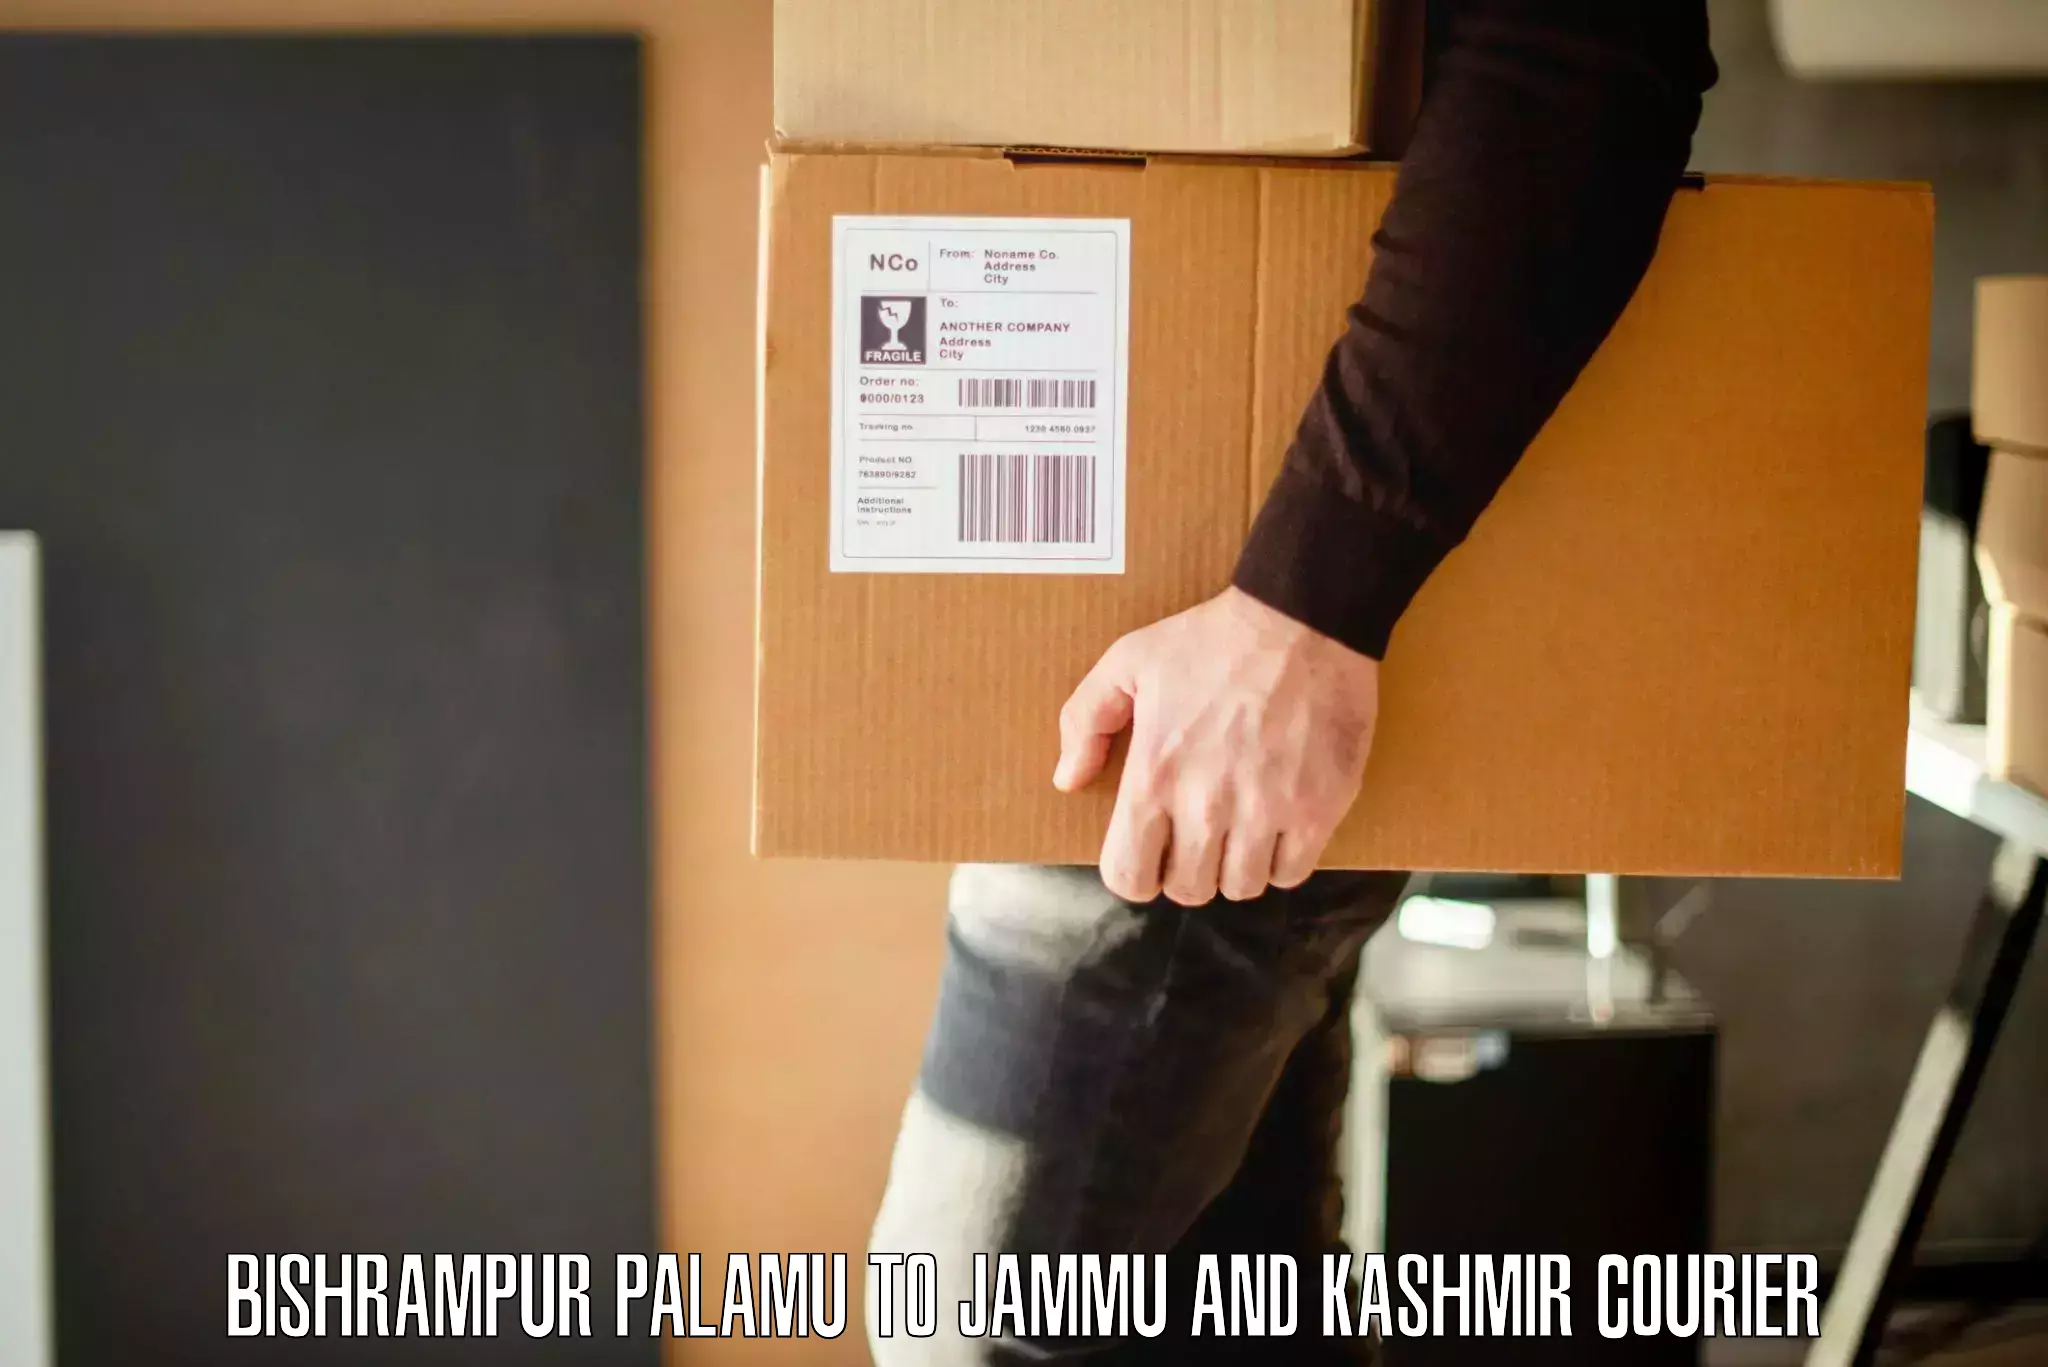 Furniture moving assistance Bishrampur Palamu to University of Jammu